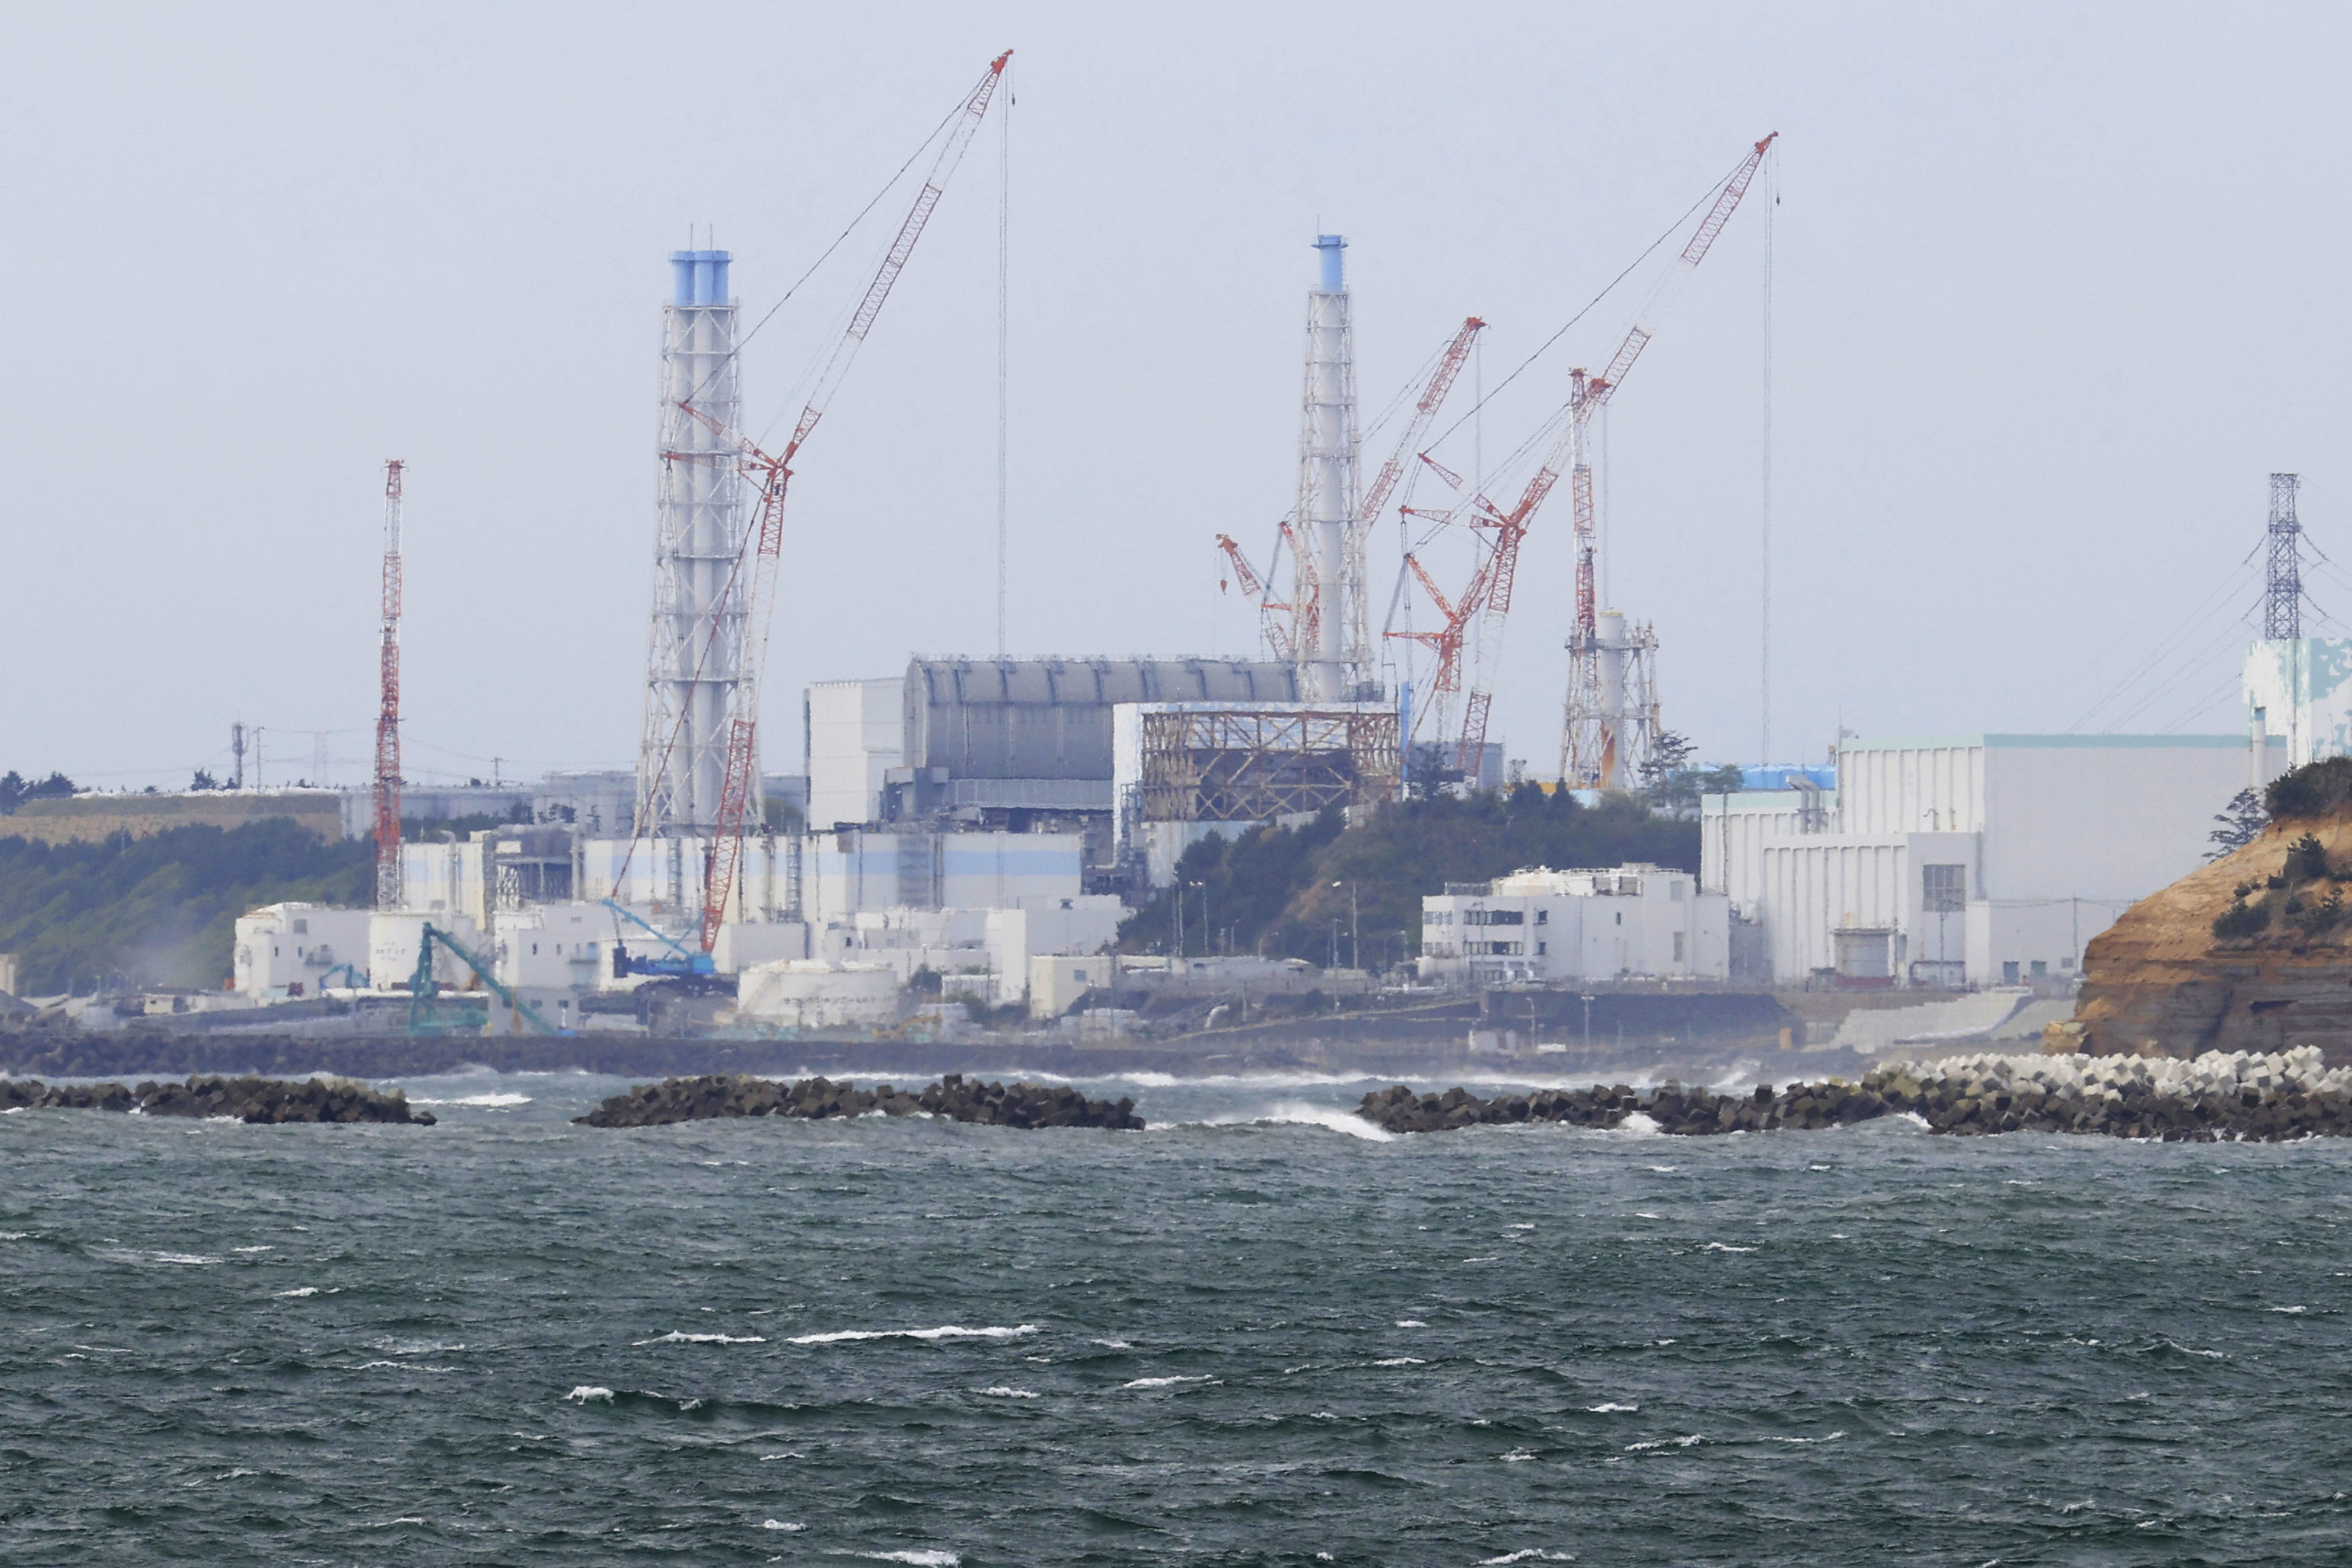 日本考虑转移3万吨核污水,测定放射性物质为排入海内做准备